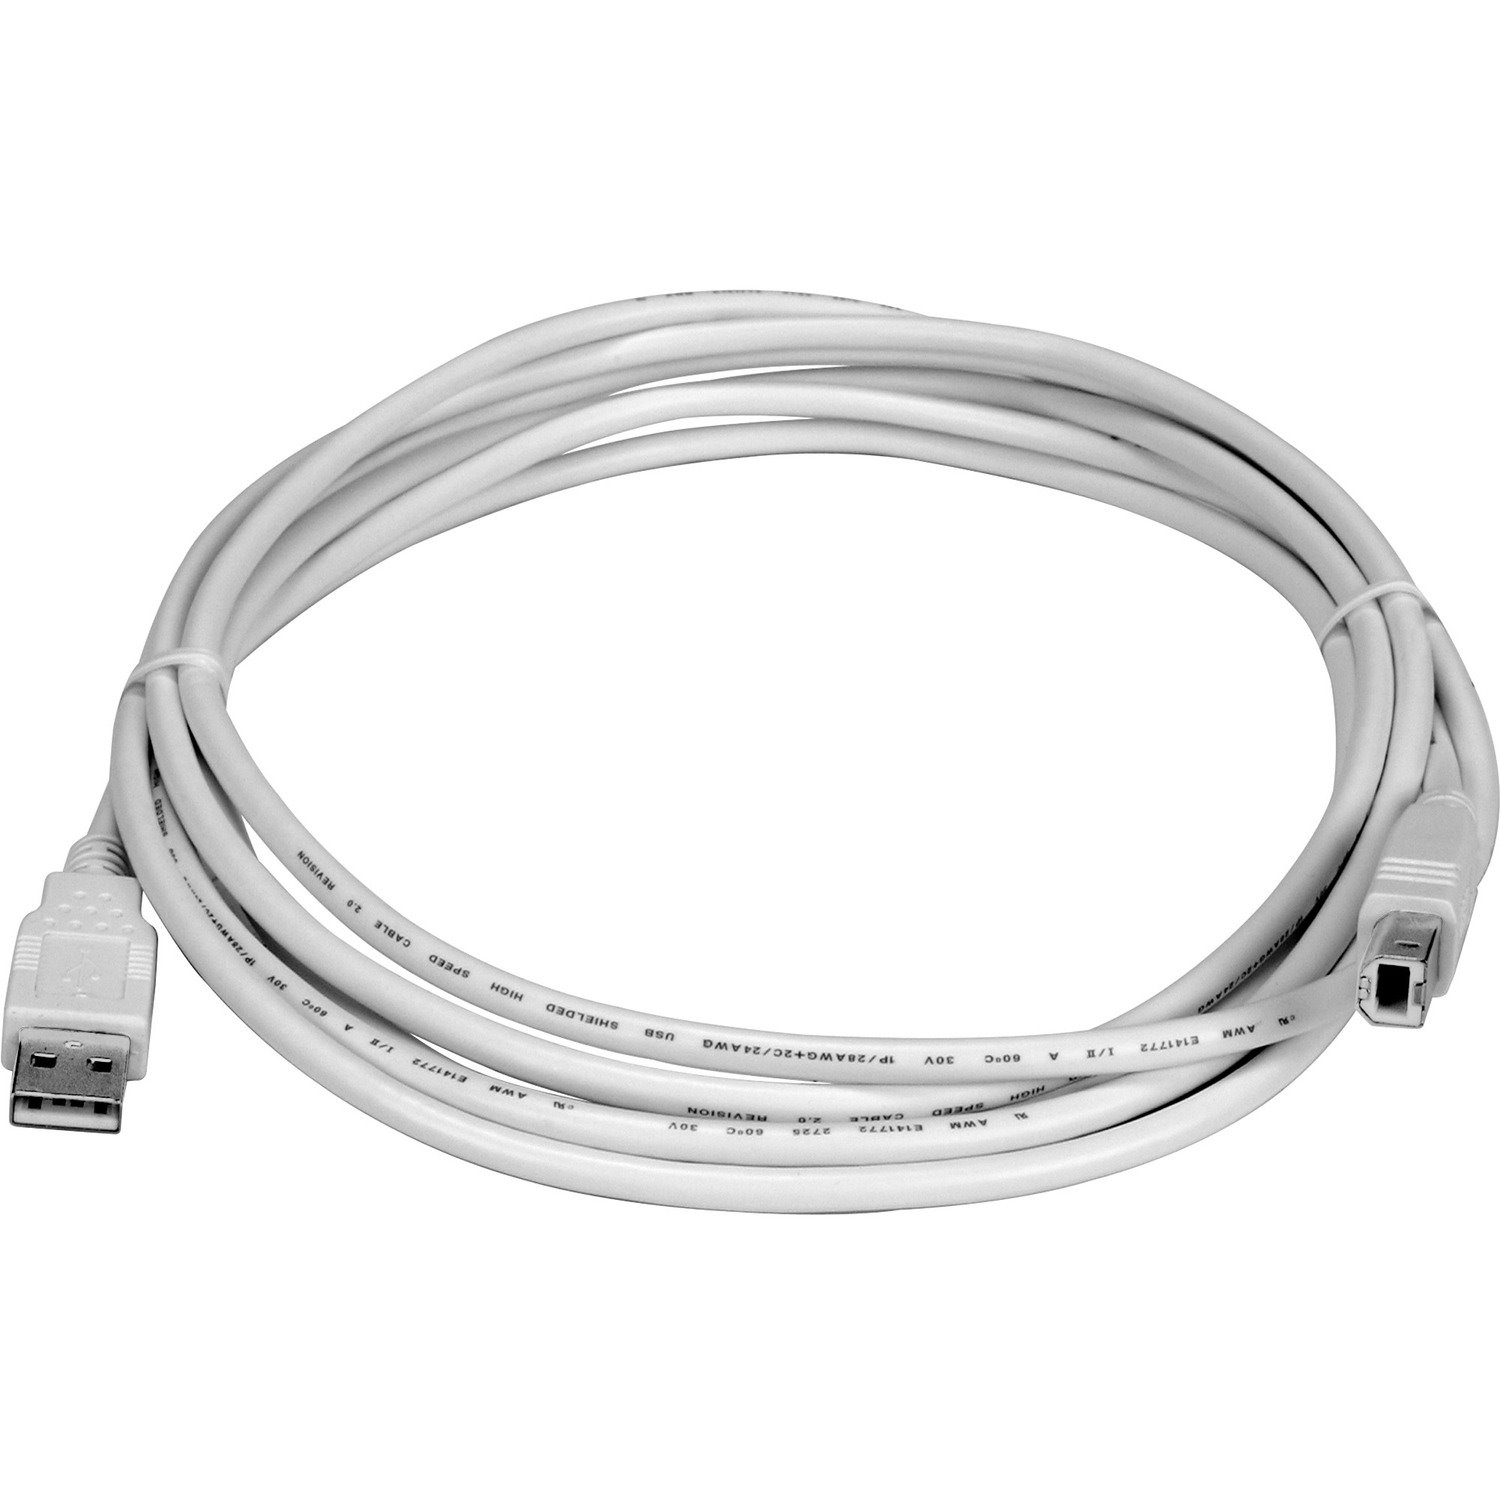 Lexmark USB Cable